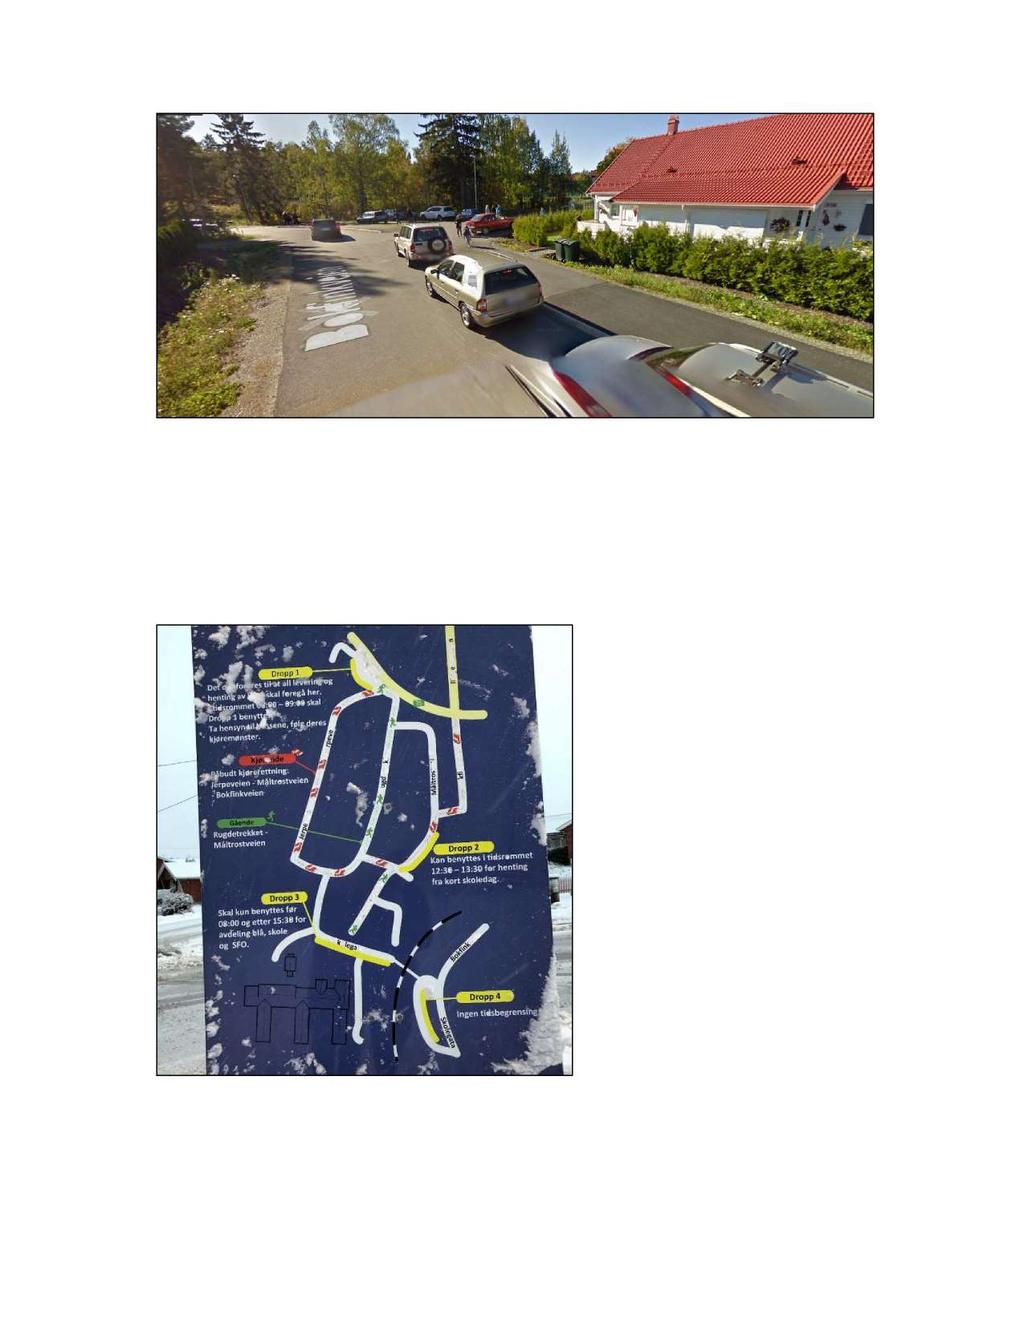 Foto: Trafikksituasjonen om morgenen ved av- og påstigningsplassen øst for Krøderbanen (kilde: google streetview i september i 2010).